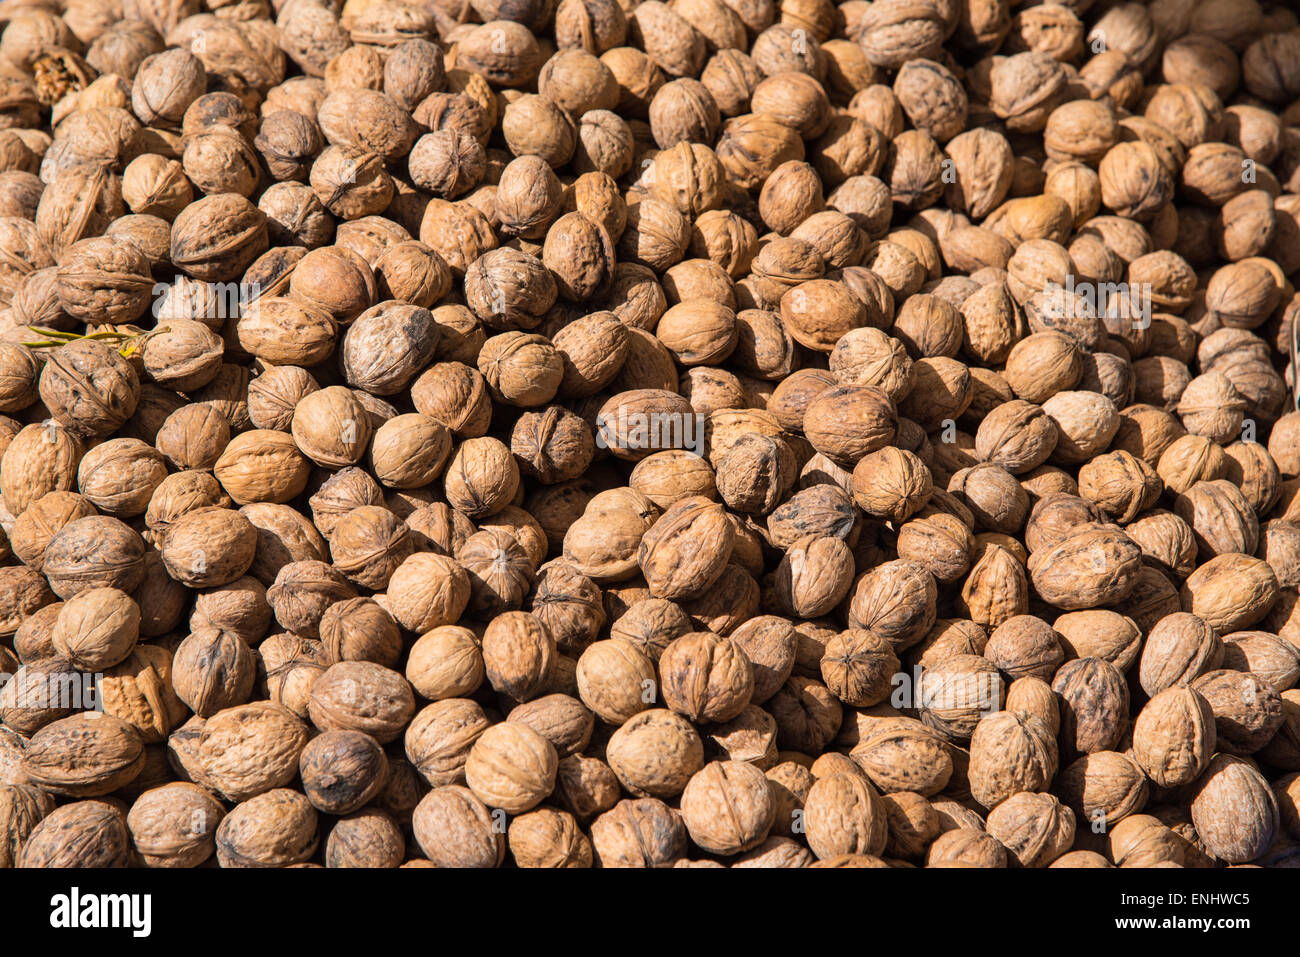 Persian or English walnuts (Juglans regia) in a Turkish street market Stock Photo